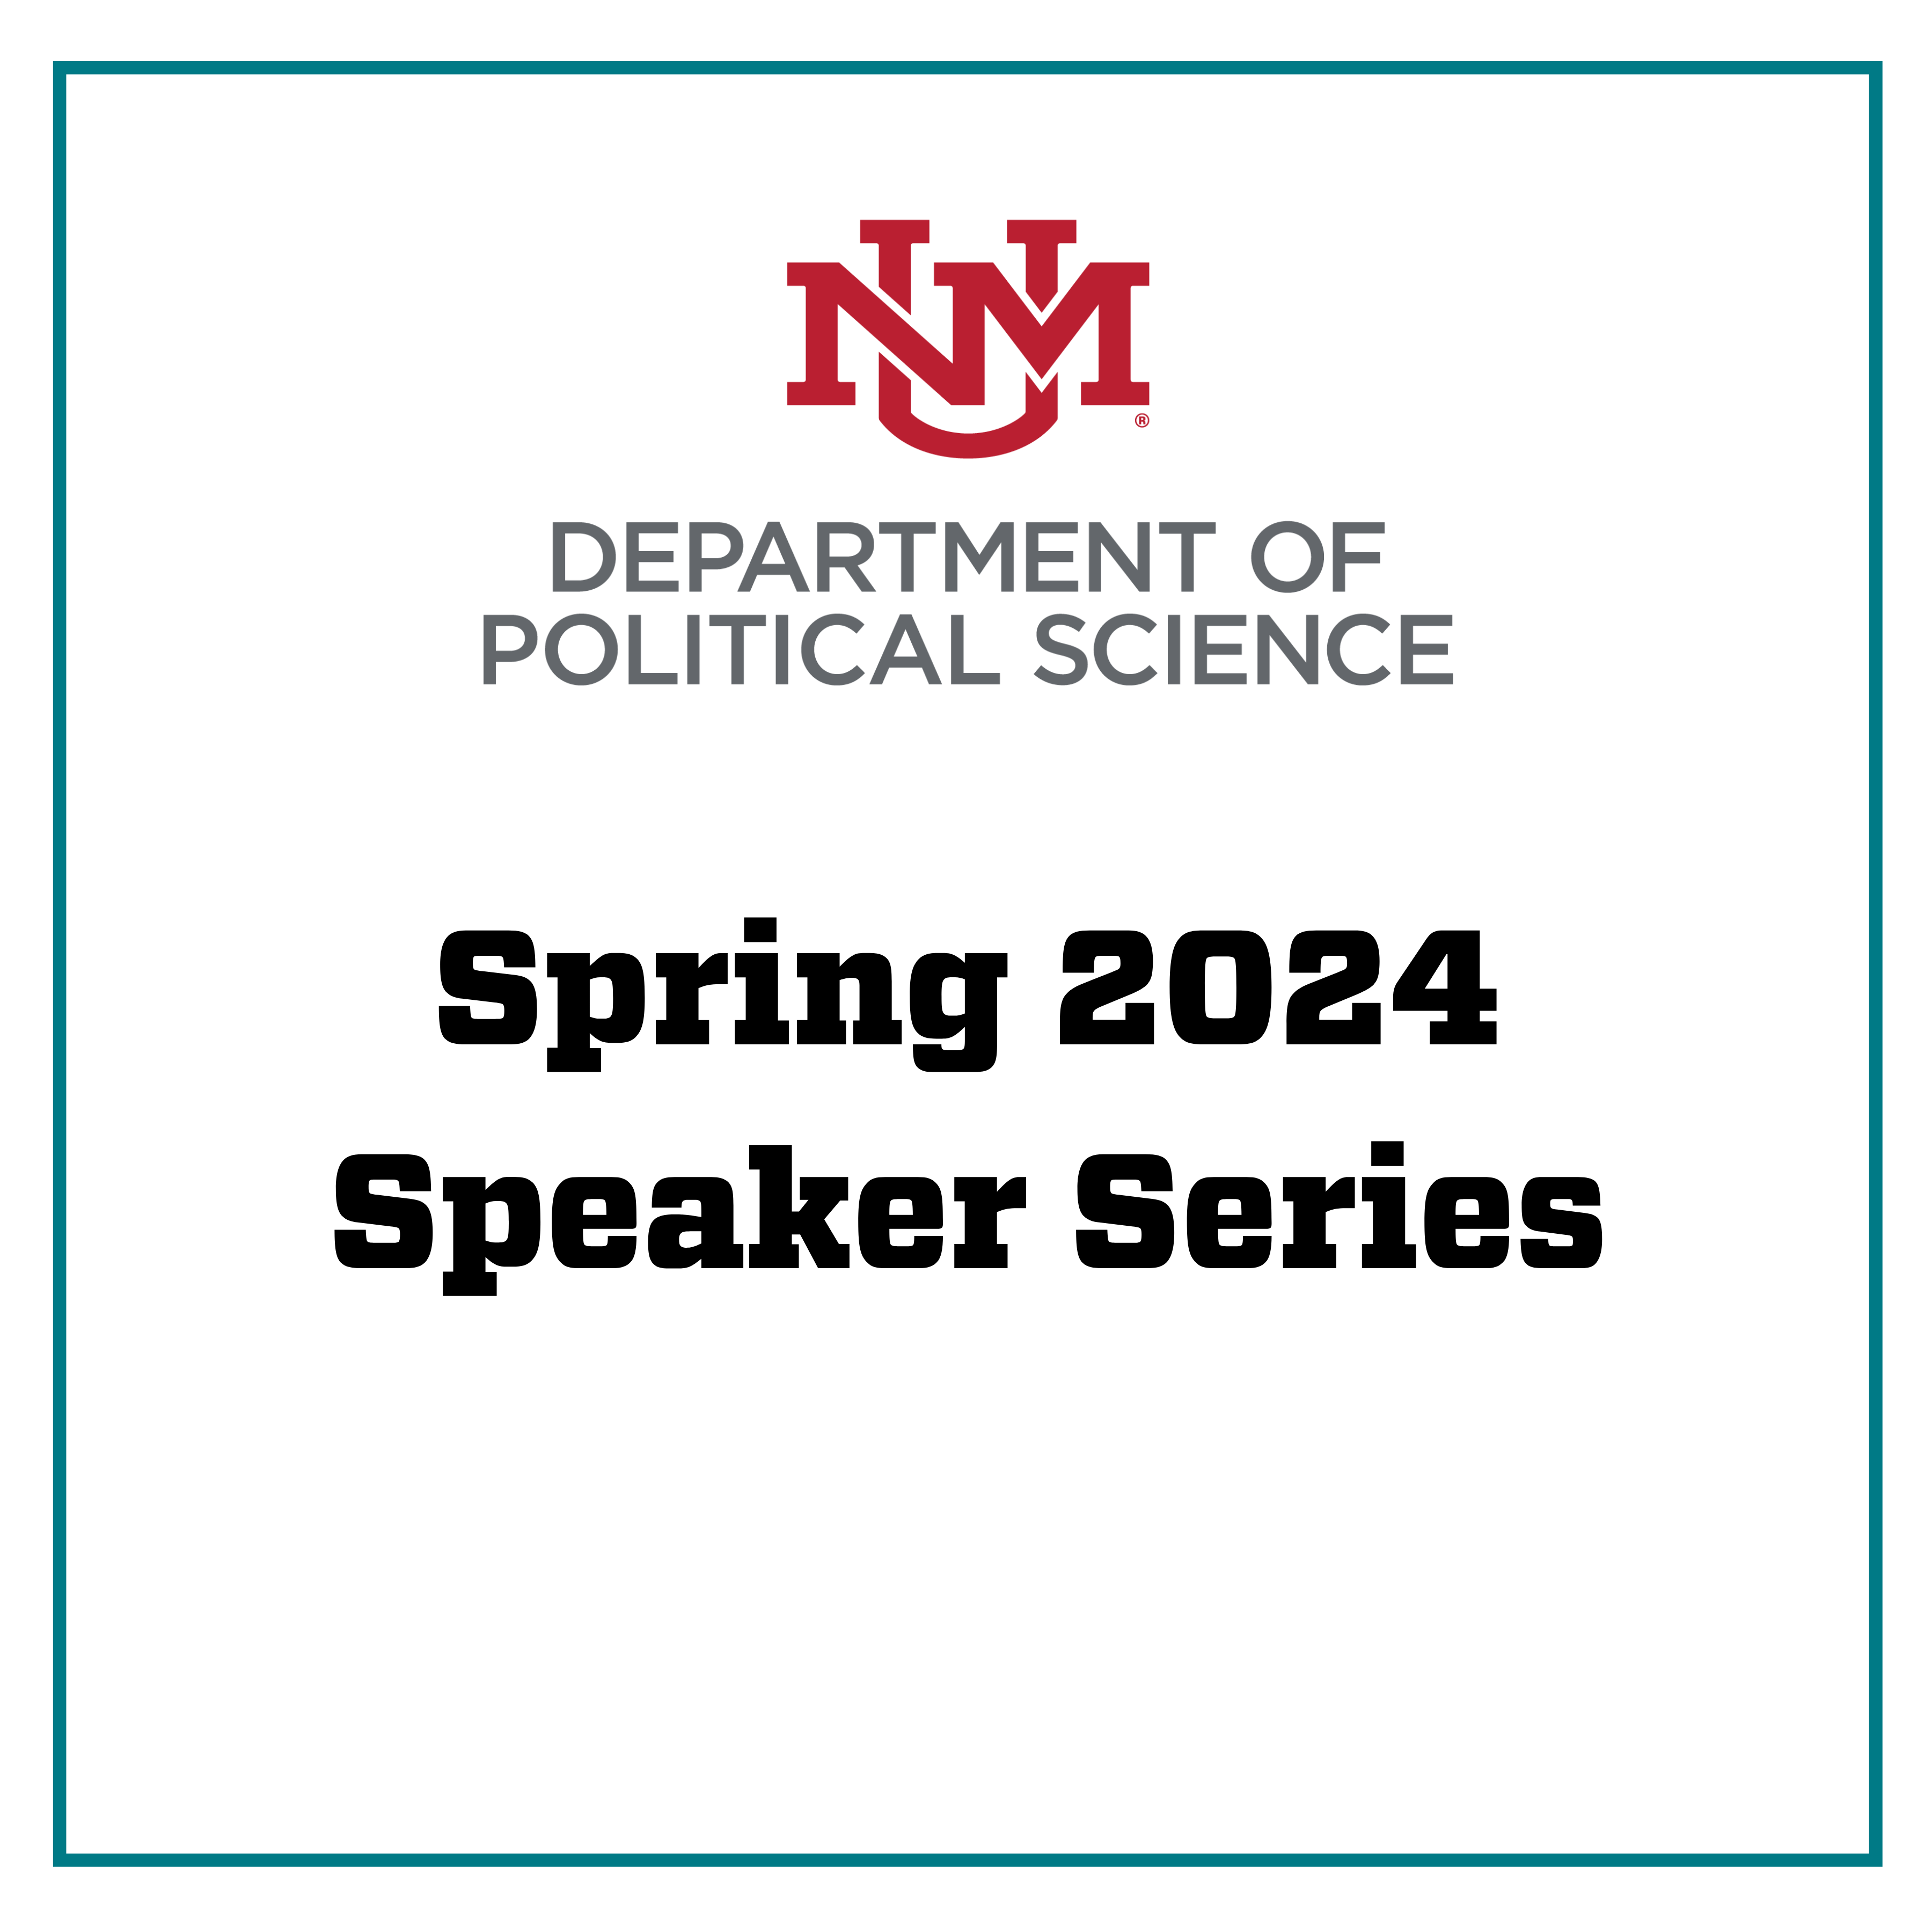 Spring 2024 Speaker Series & Logo